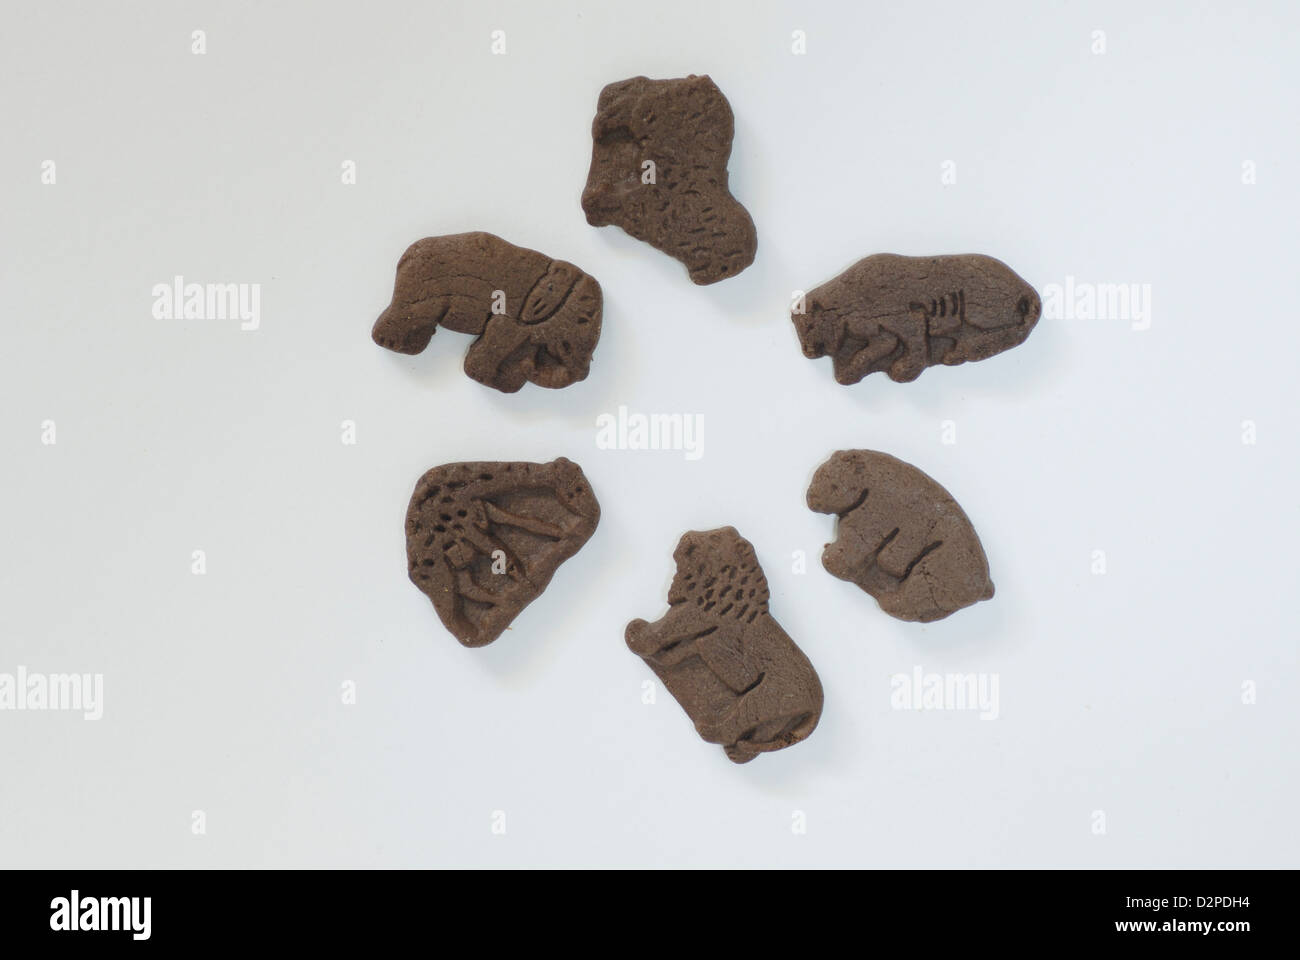 Animal förmige Schokoladenkekse auf weißem Hintergrund mit Schatten, Elefant, Lamm, Cougar, Bären, Löwen, Giraffen Formen Stockfoto